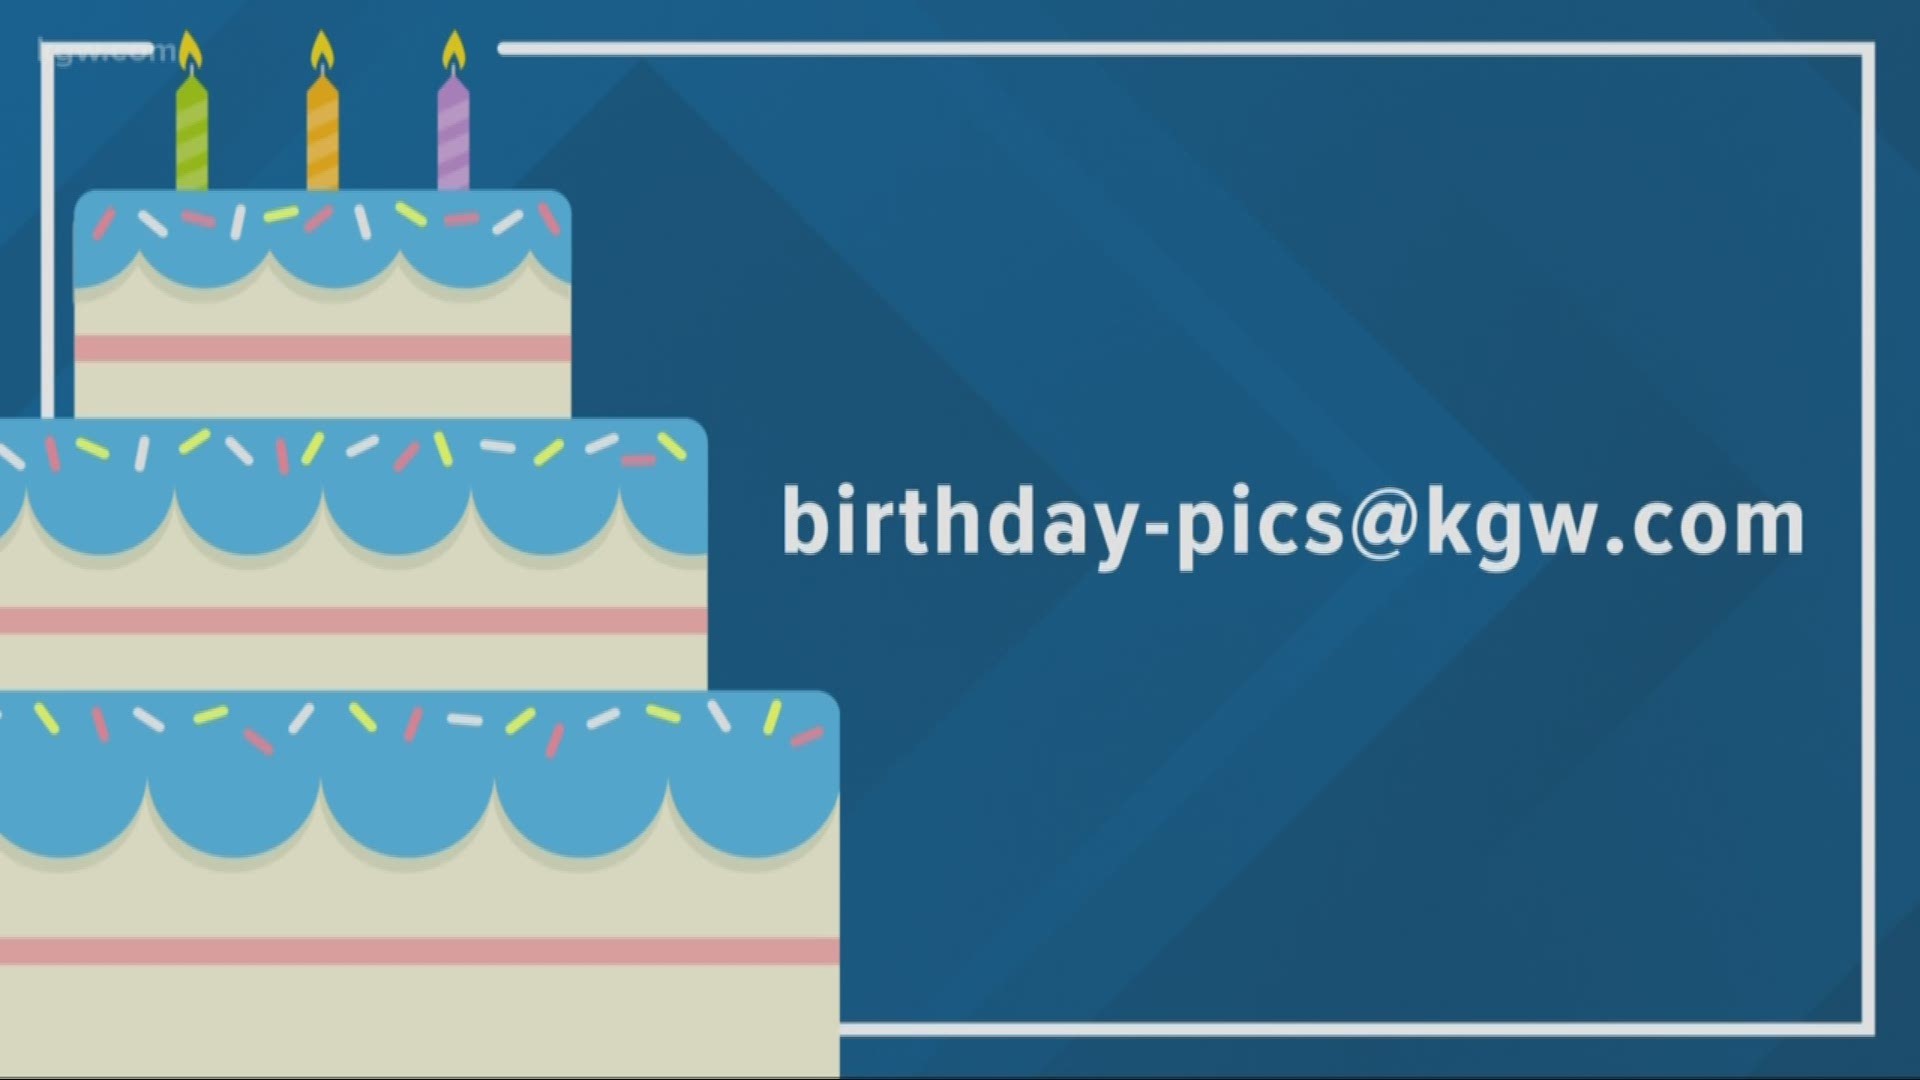 KGW viewer birthdays: 2-21-19